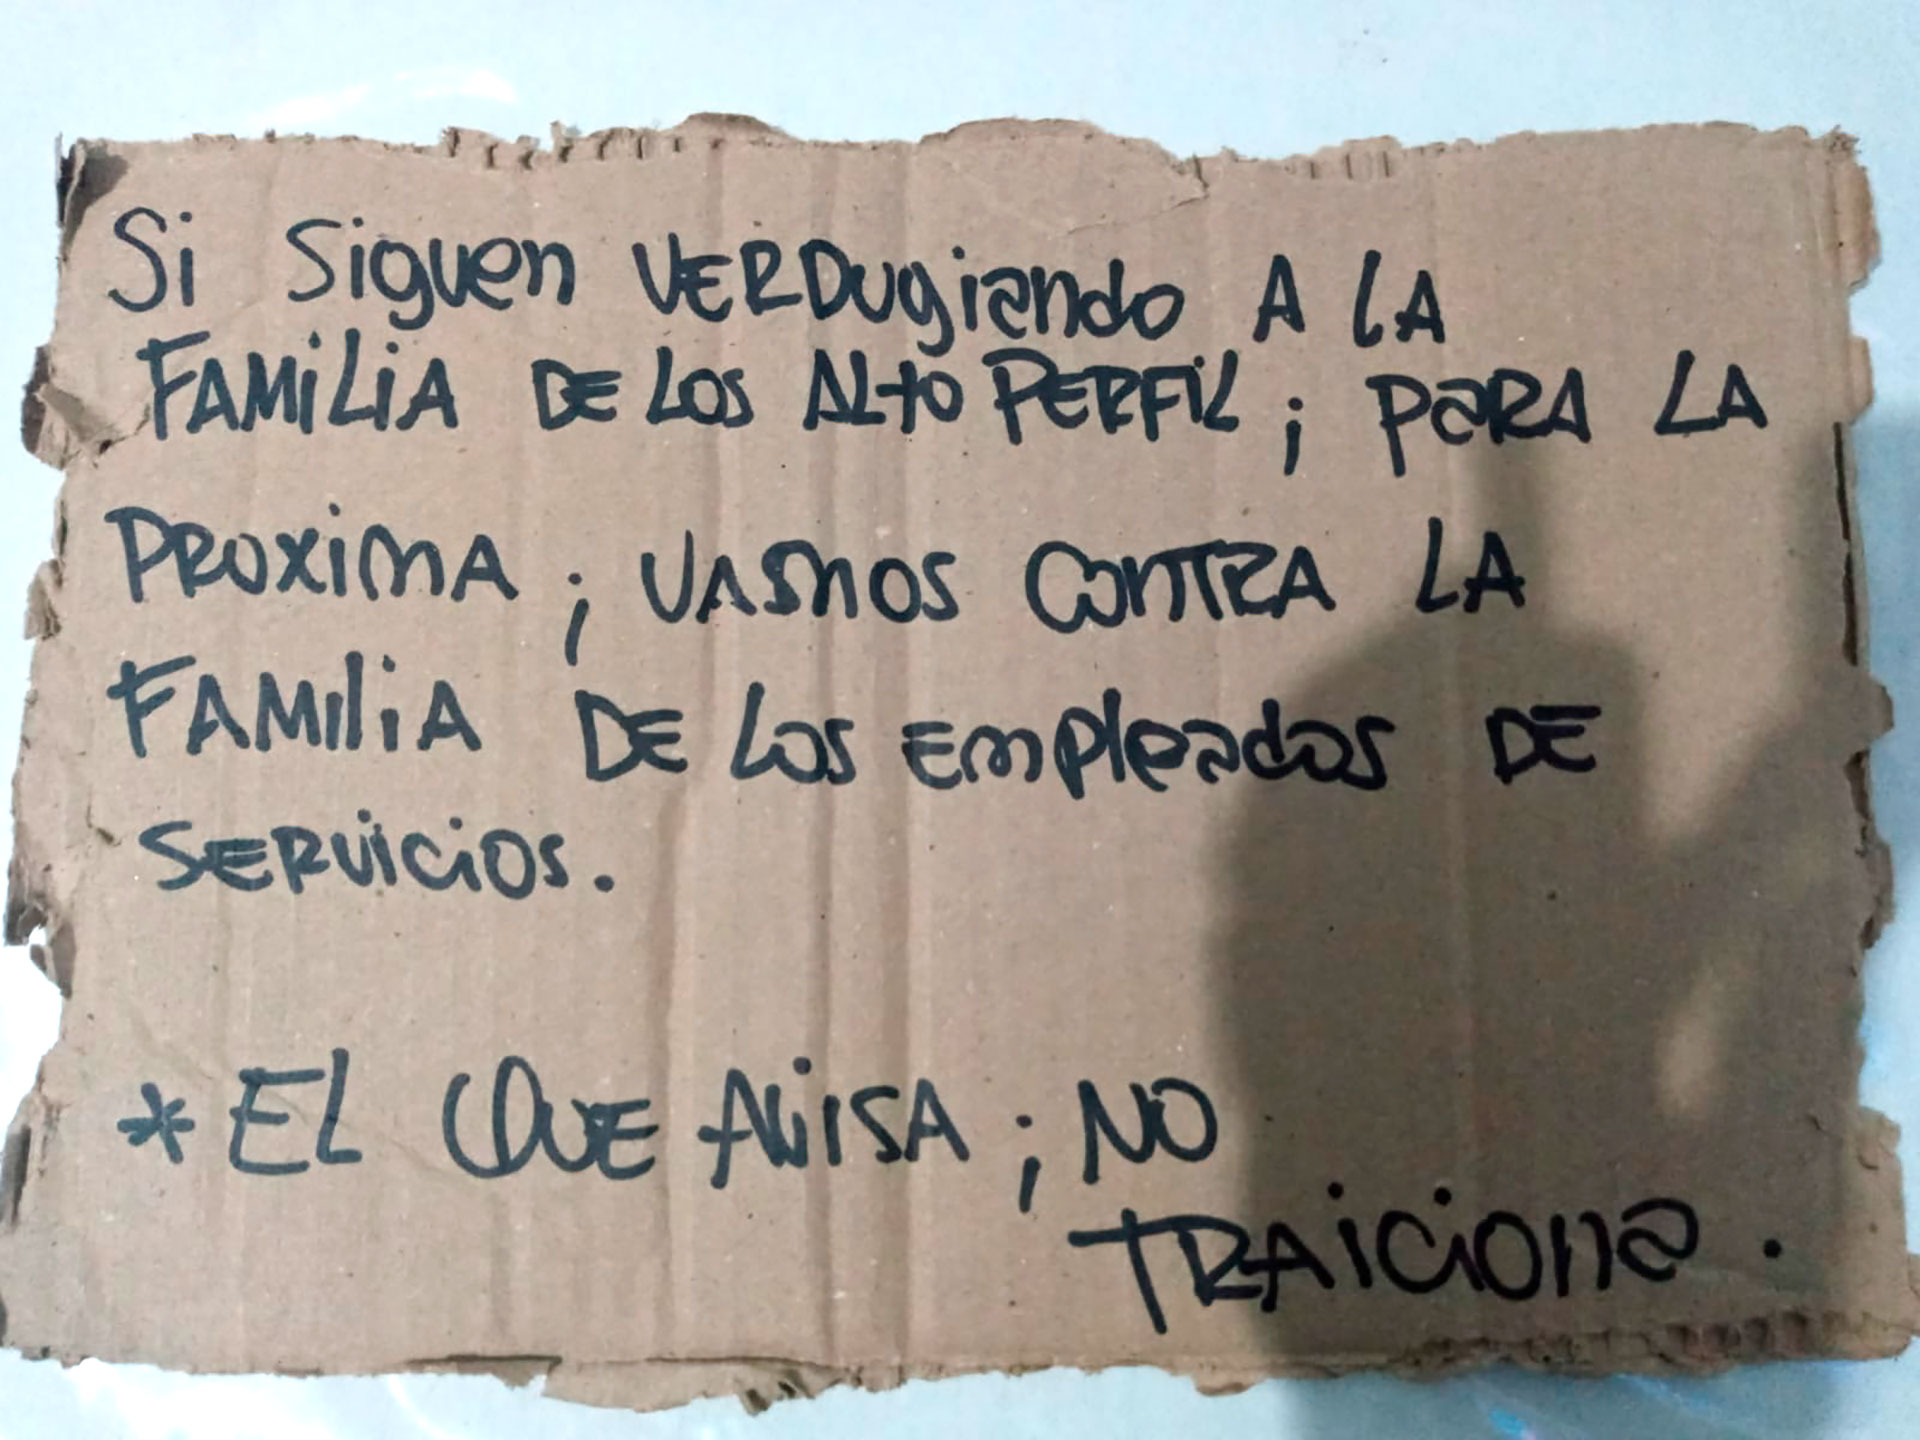 El cartel amenazante de la familia Cantero a los empleados del Servicio Penitenciario de Rosario